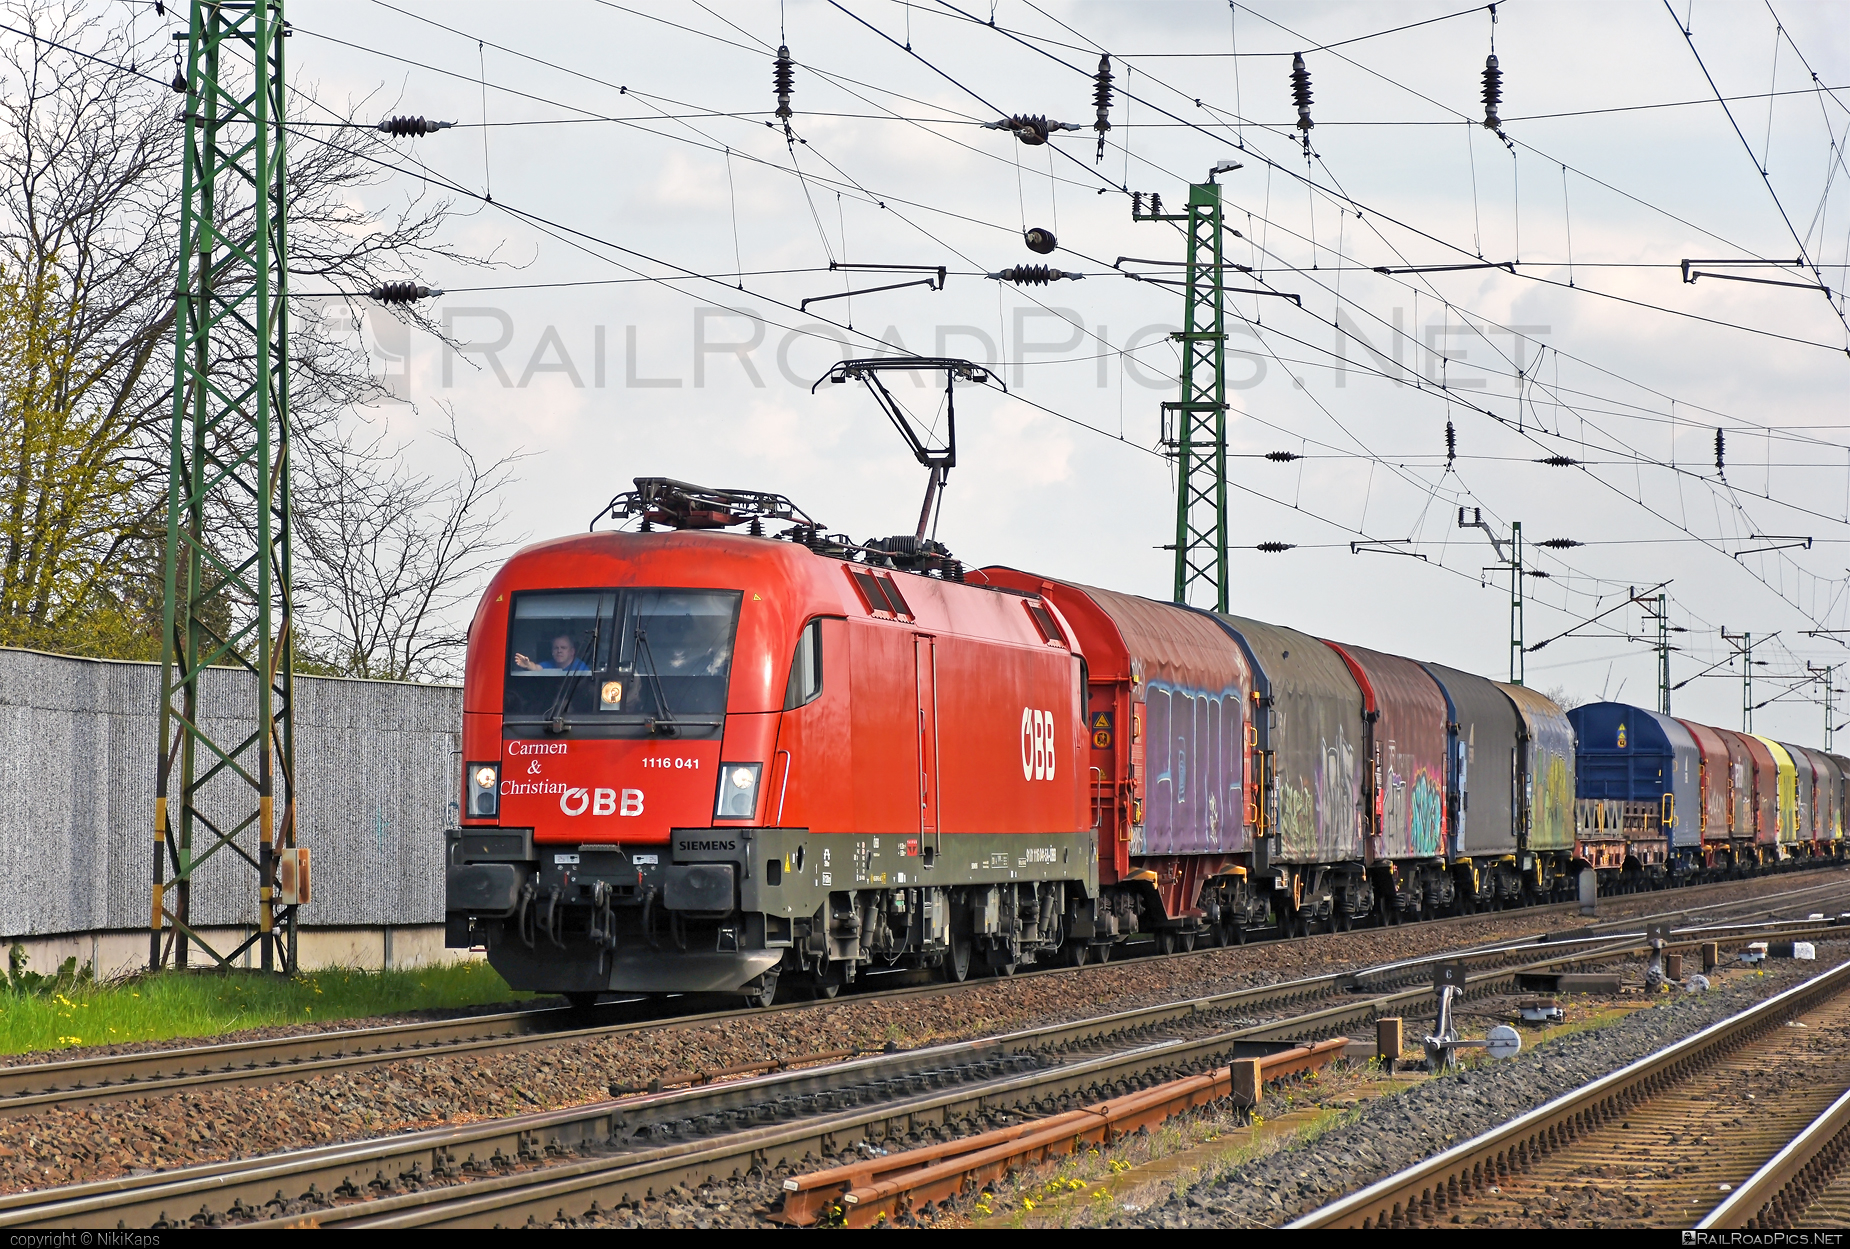 Siemens ES 64 U2 - 1116 041 operated by Rail Cargo Austria AG #es64 #es64u2 #eurosprinter #graffiti #greetings #obb #osterreichischebundesbahnen #rcw #siemens #siemensEs64 #siemensEs64u2 #siemenstaurus #taurus #tauruslocomotive